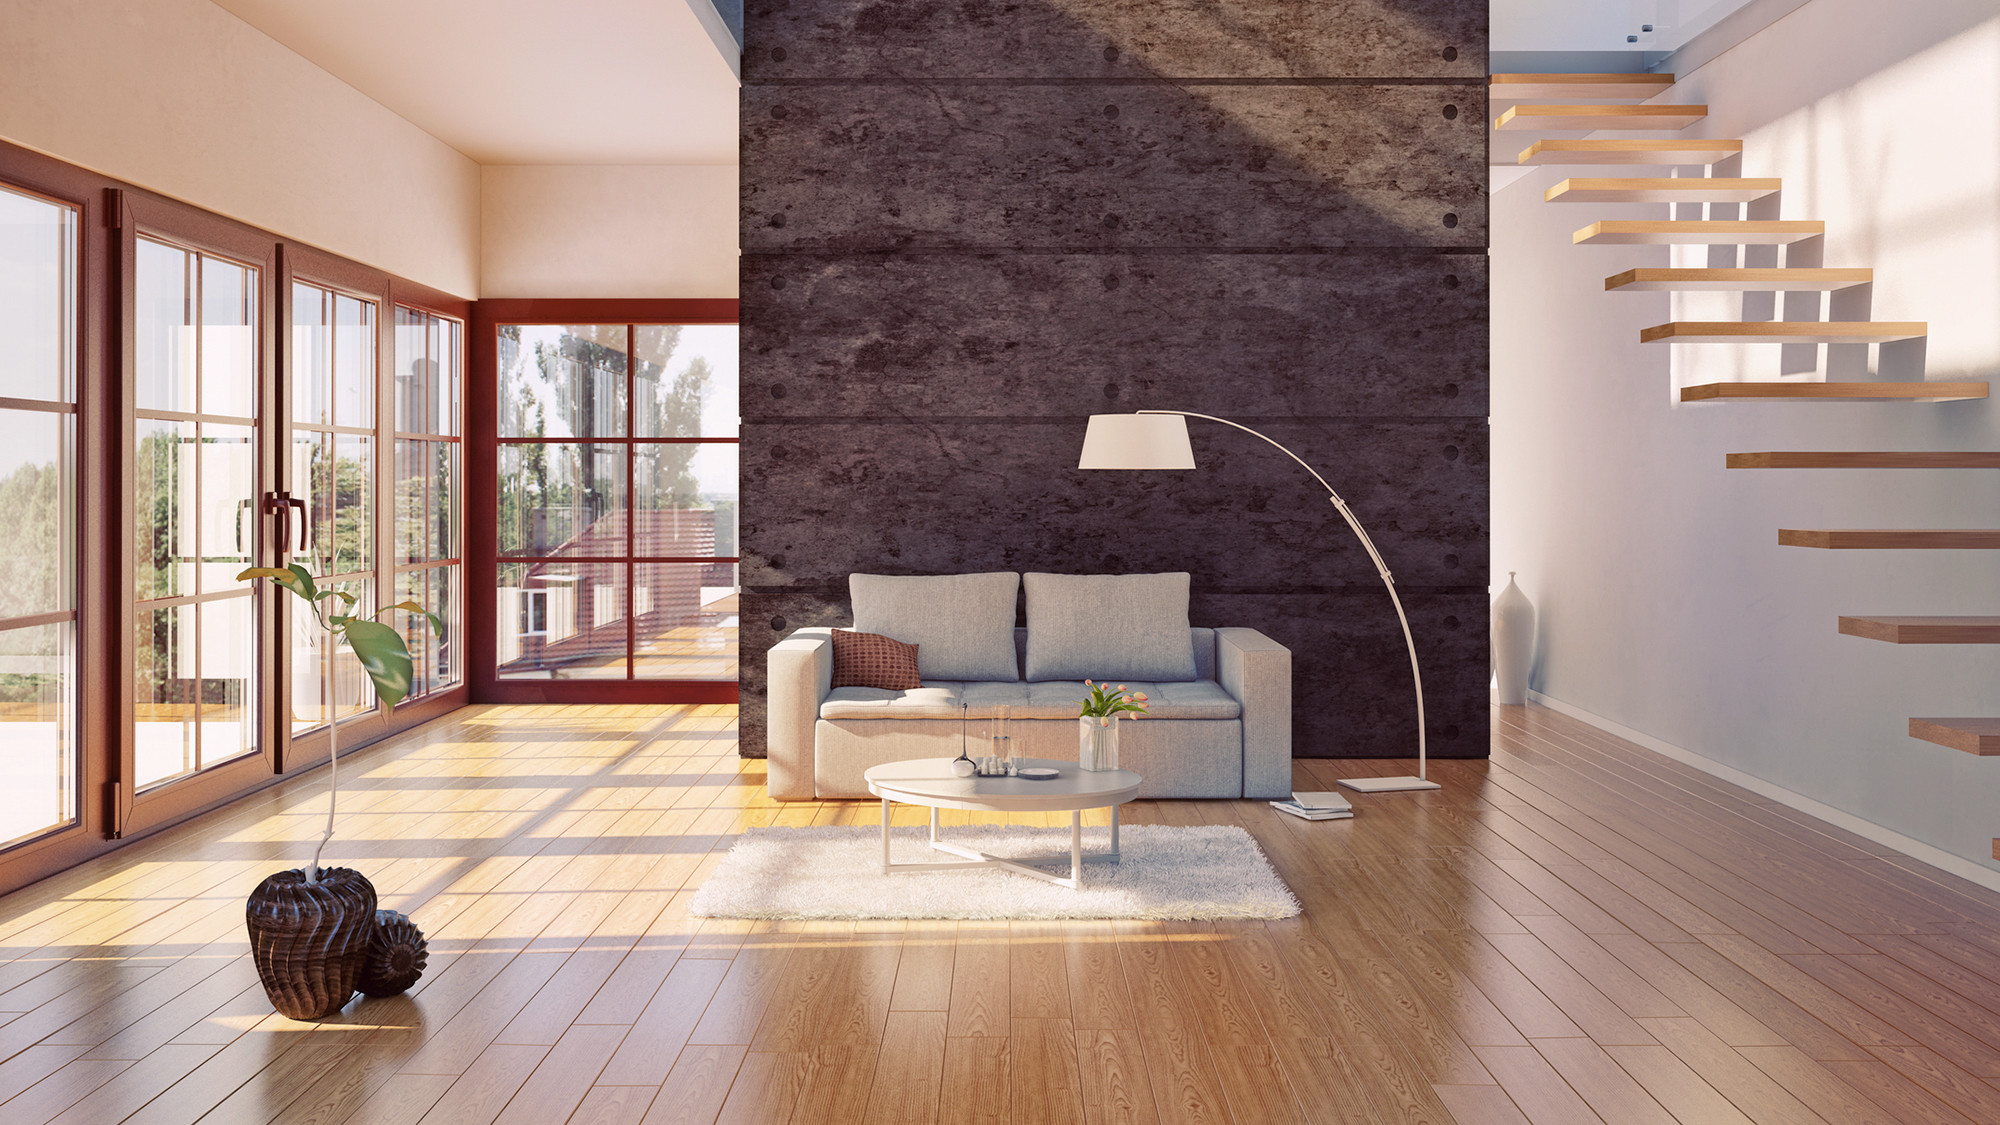 average cost of sanding hardwood floors of do hardwood floors provide the best return on investment realtor coma inside hardwood floors investment